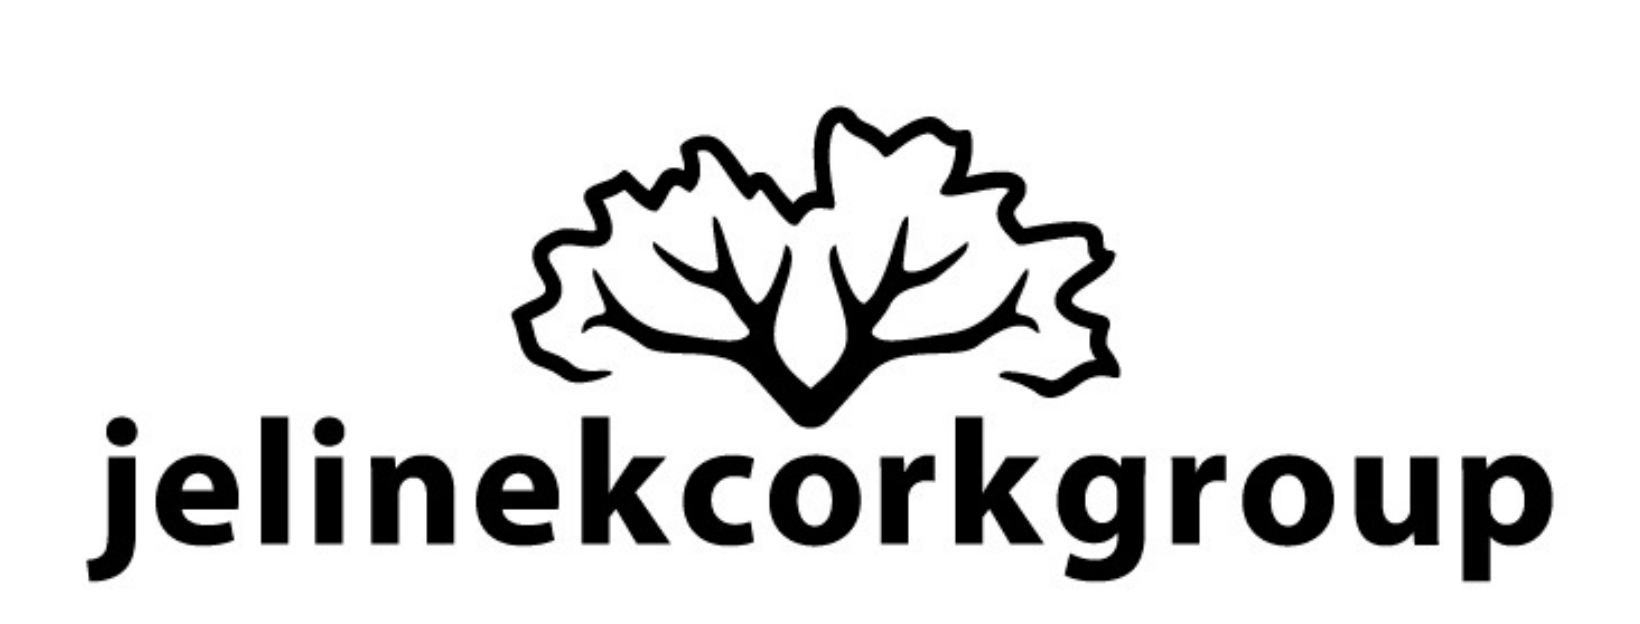 Jelinek Cork logo